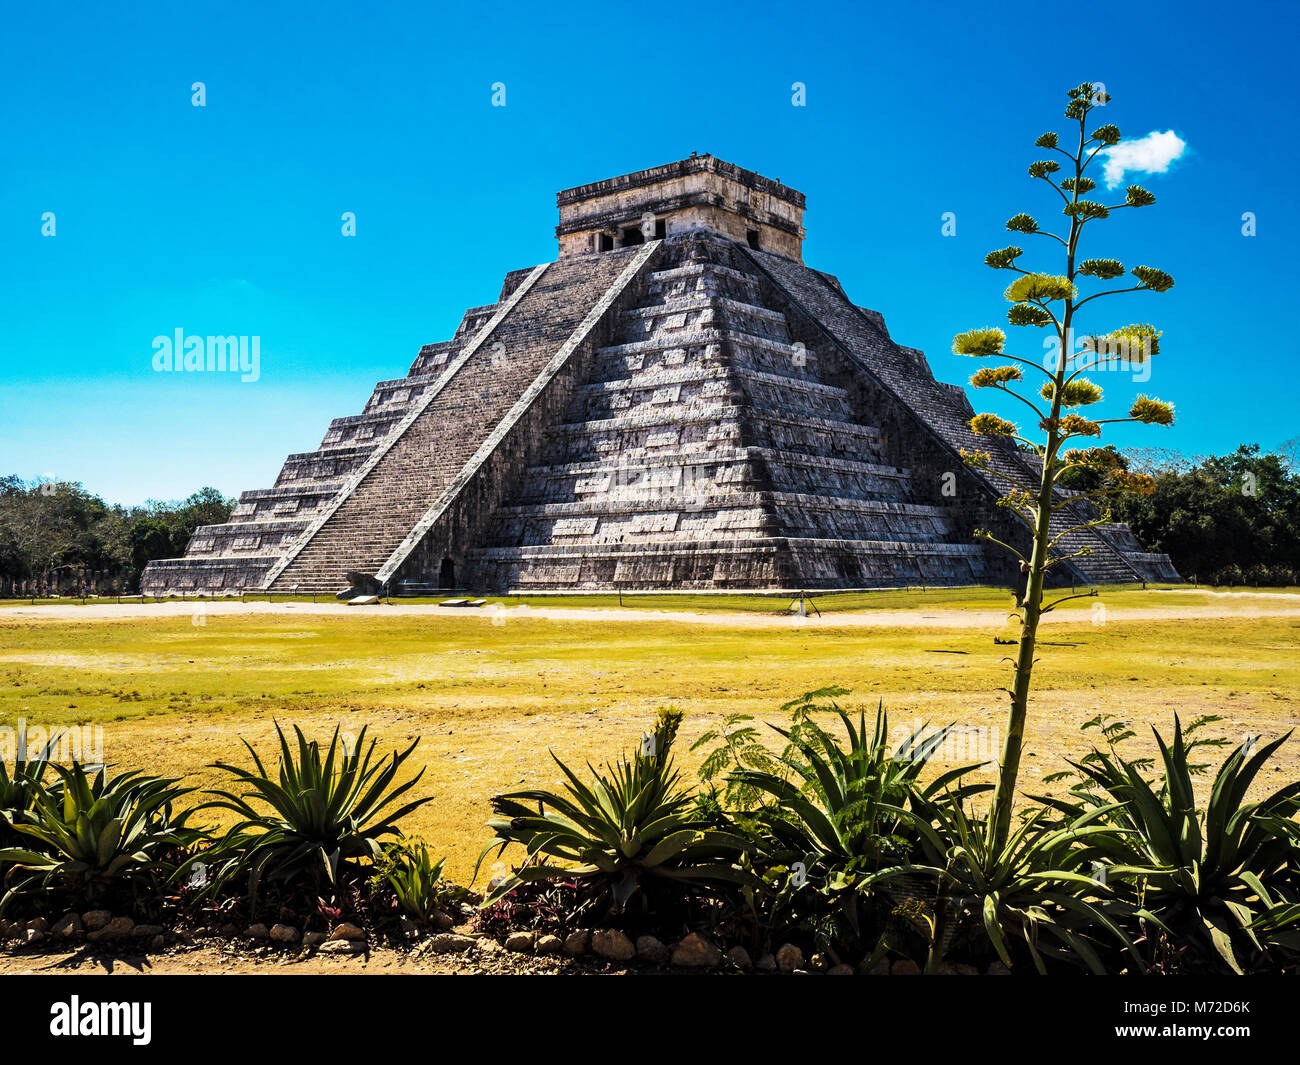 El Castillo, die Pyramide des Kukulkán, ist die populärste Gebäude in der UNESCO Maya Ruinen von Chichen Itza Archaeological Site Stockfoto